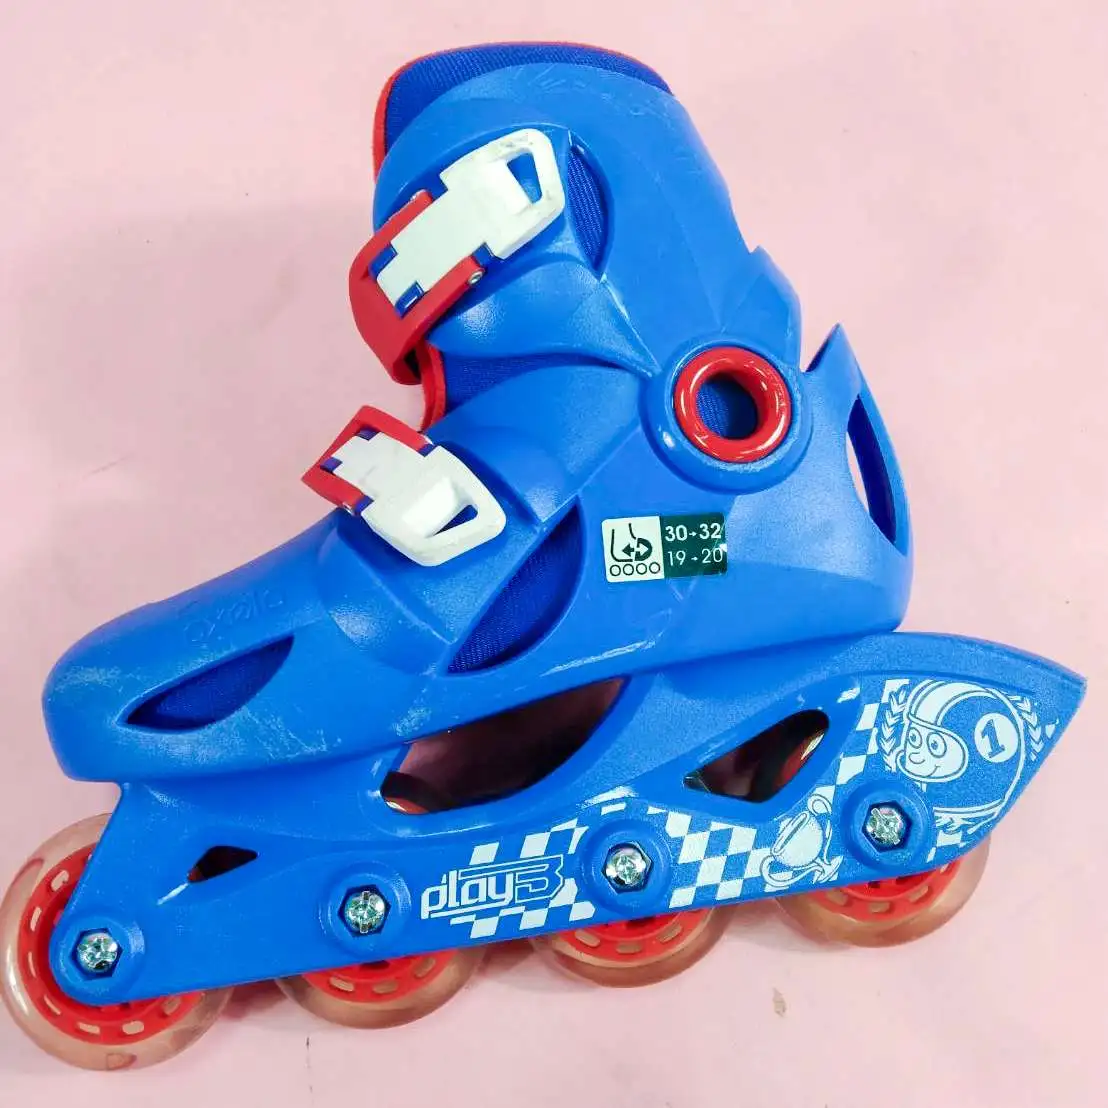 รองเท้าสเก็ตสำหรับเด็ก รุ่น Play 3 roller blade decathlon Size EU 30-32 